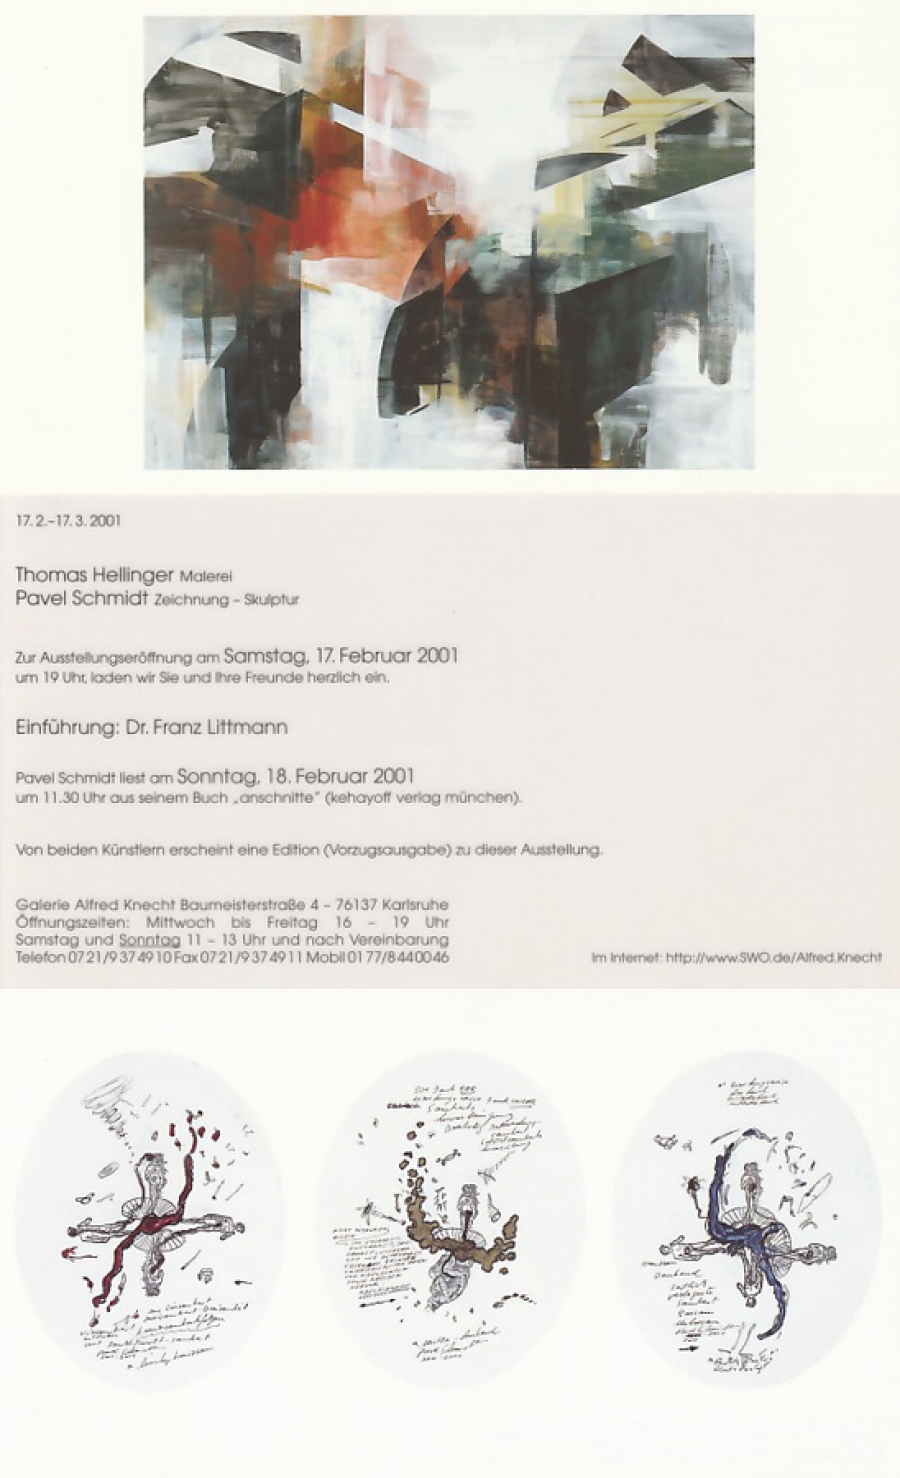 Einladungskarten: Thomas Hellinger - Malerei,  Pavel Schmidt - Zeichnung - Skulptur • Galerie Alfred Knecht, Karlsruhe • 2001